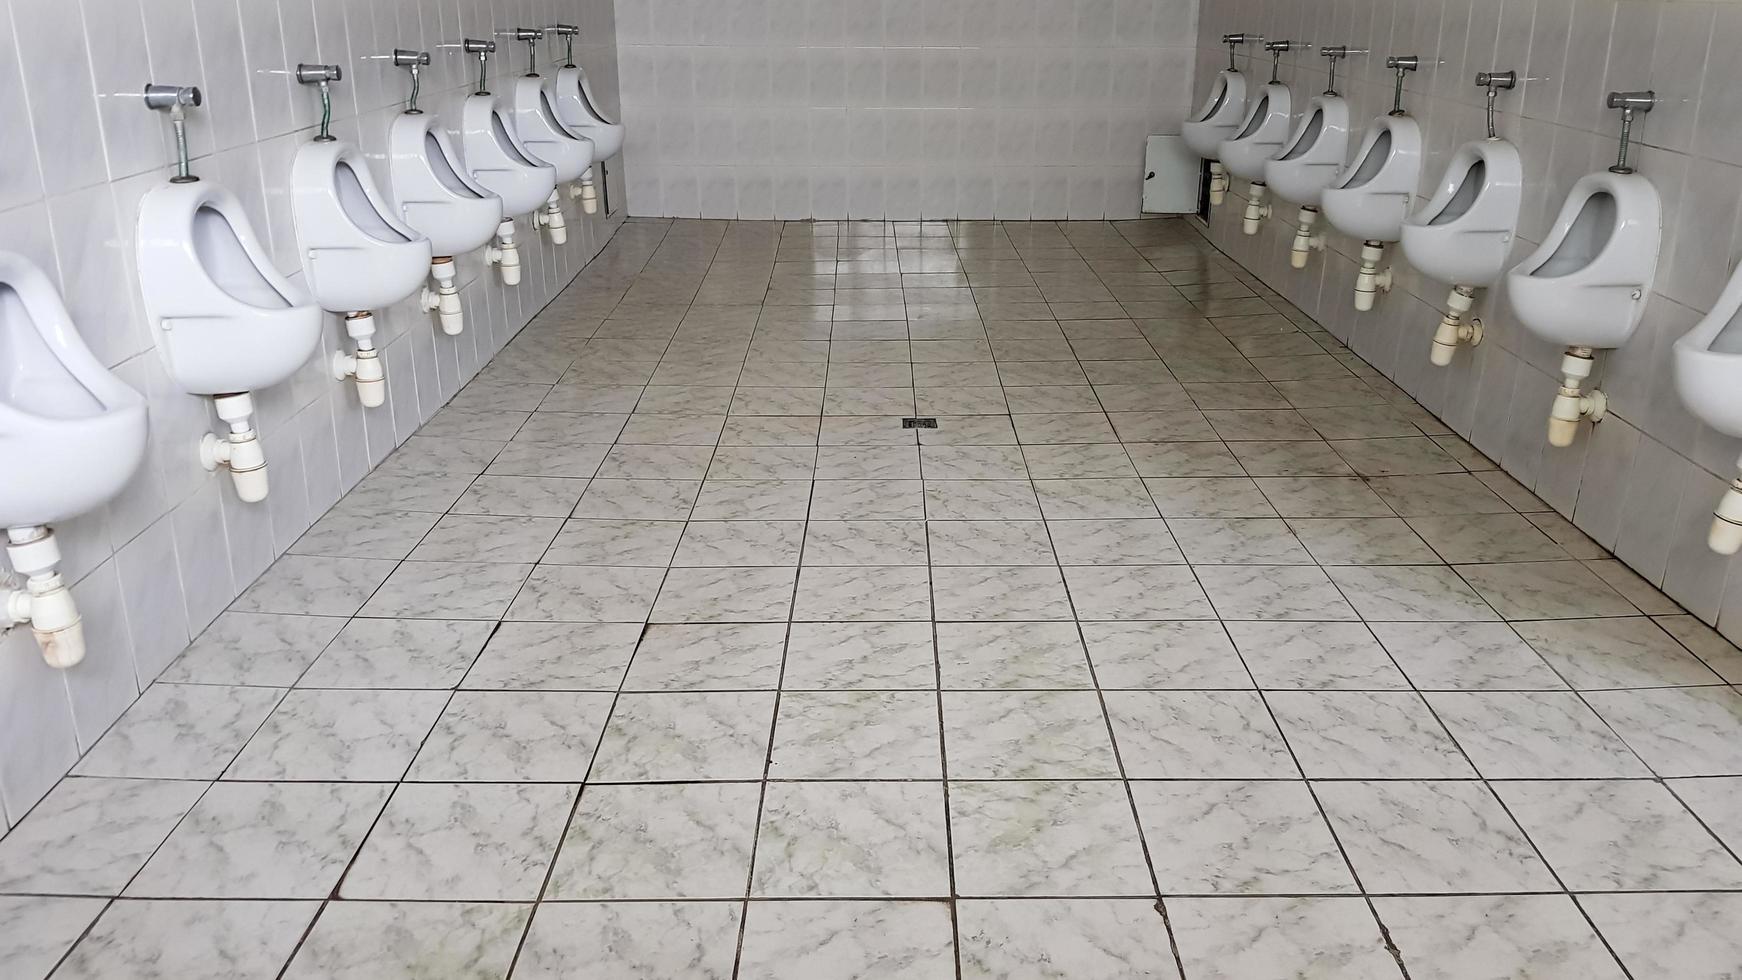 baños públicos con gran cantidad de urinarios de cerámica. baño público grande, cuencos de pared en el baño. Los urinarios preparan cuencos para hombres. foto